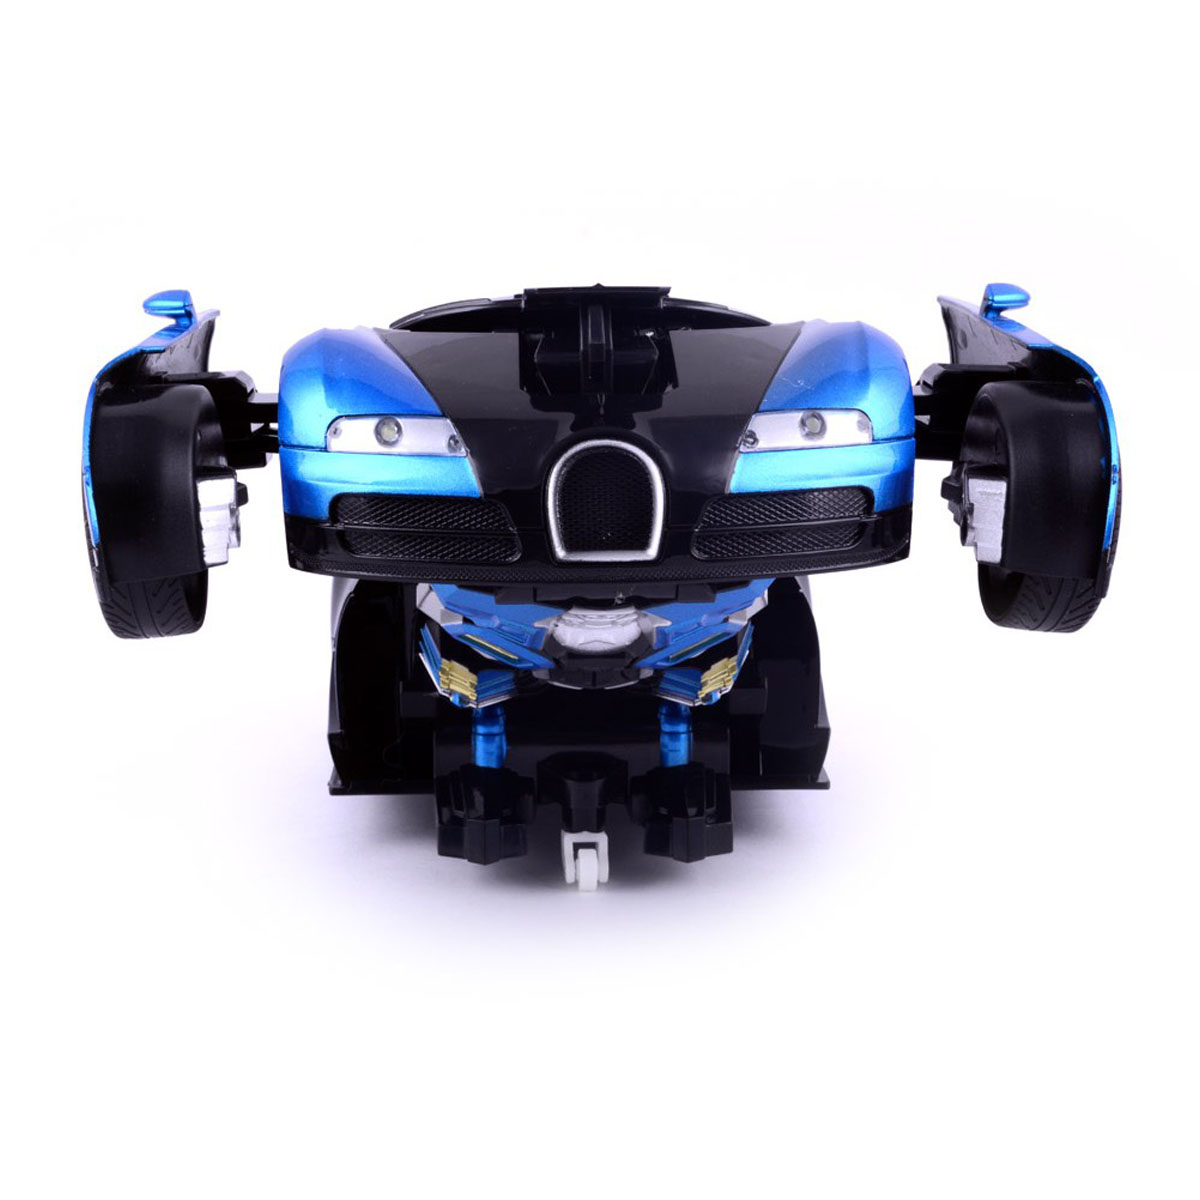 Remote Control Transformer Car for Kids- Blue colour